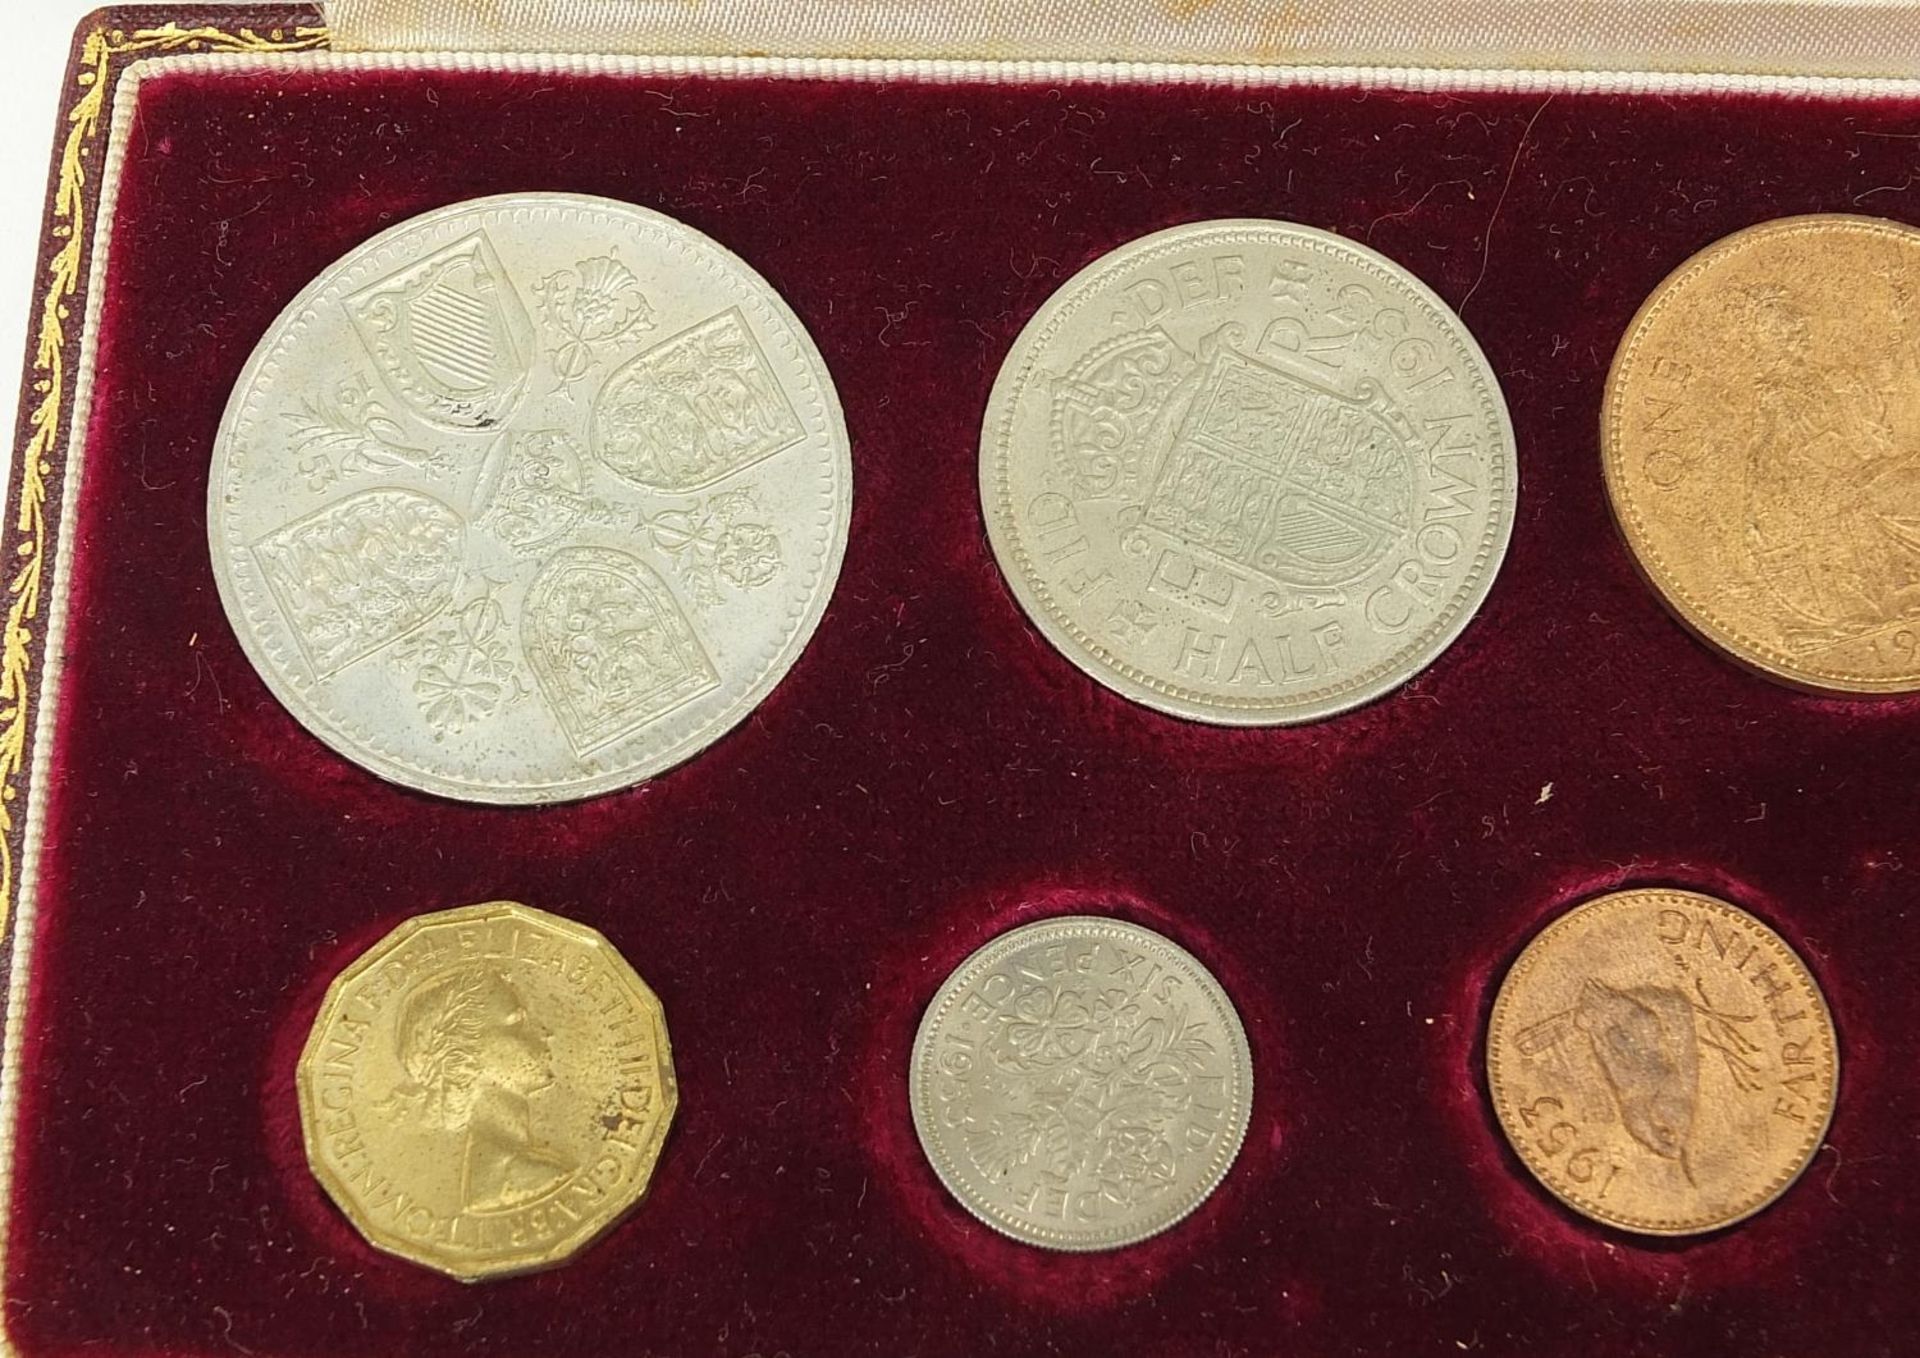 Elizabeth II 1953 specimen coin set housed in a velvet lined tooled leather case, 20cm wide - Image 2 of 5